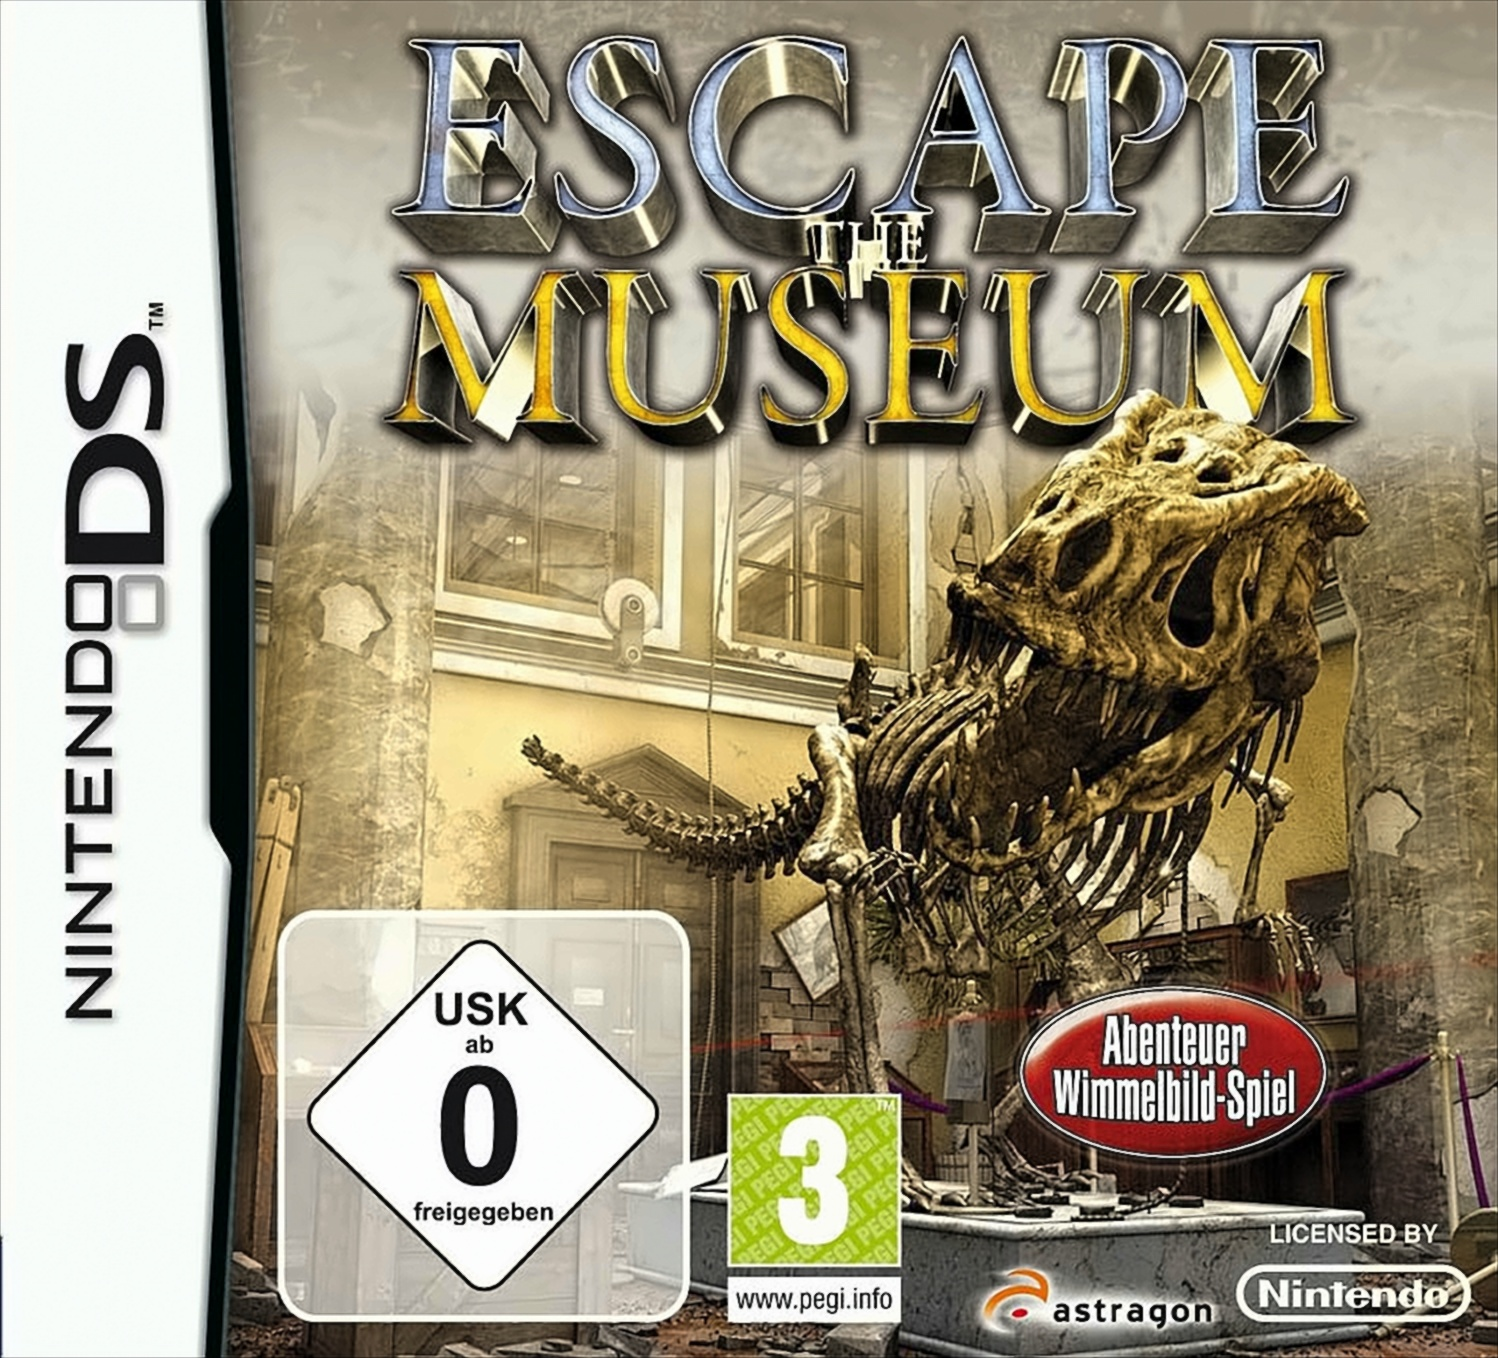 DS] The [Nintendo Escape - Museum